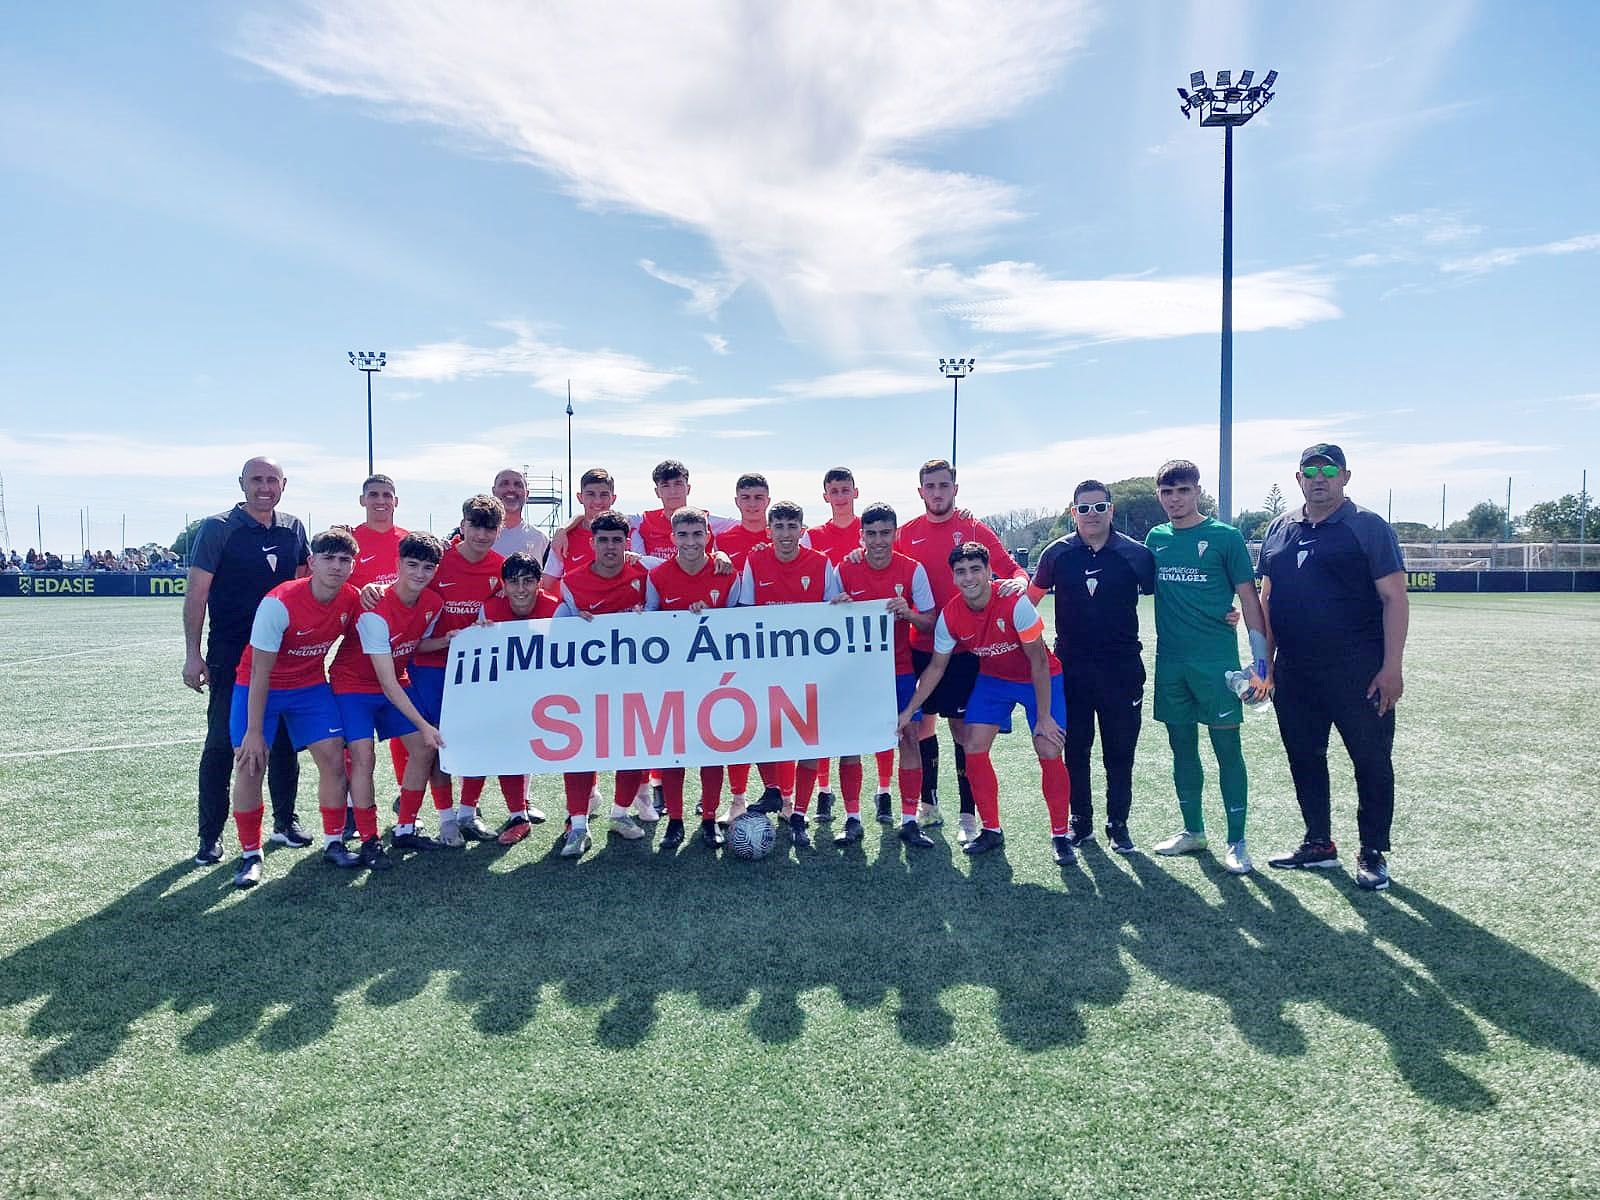 Los jugadores del Algeciras CF juvenil posan con una pancarta de apoyo a su compañero Simón tras su grave lesión